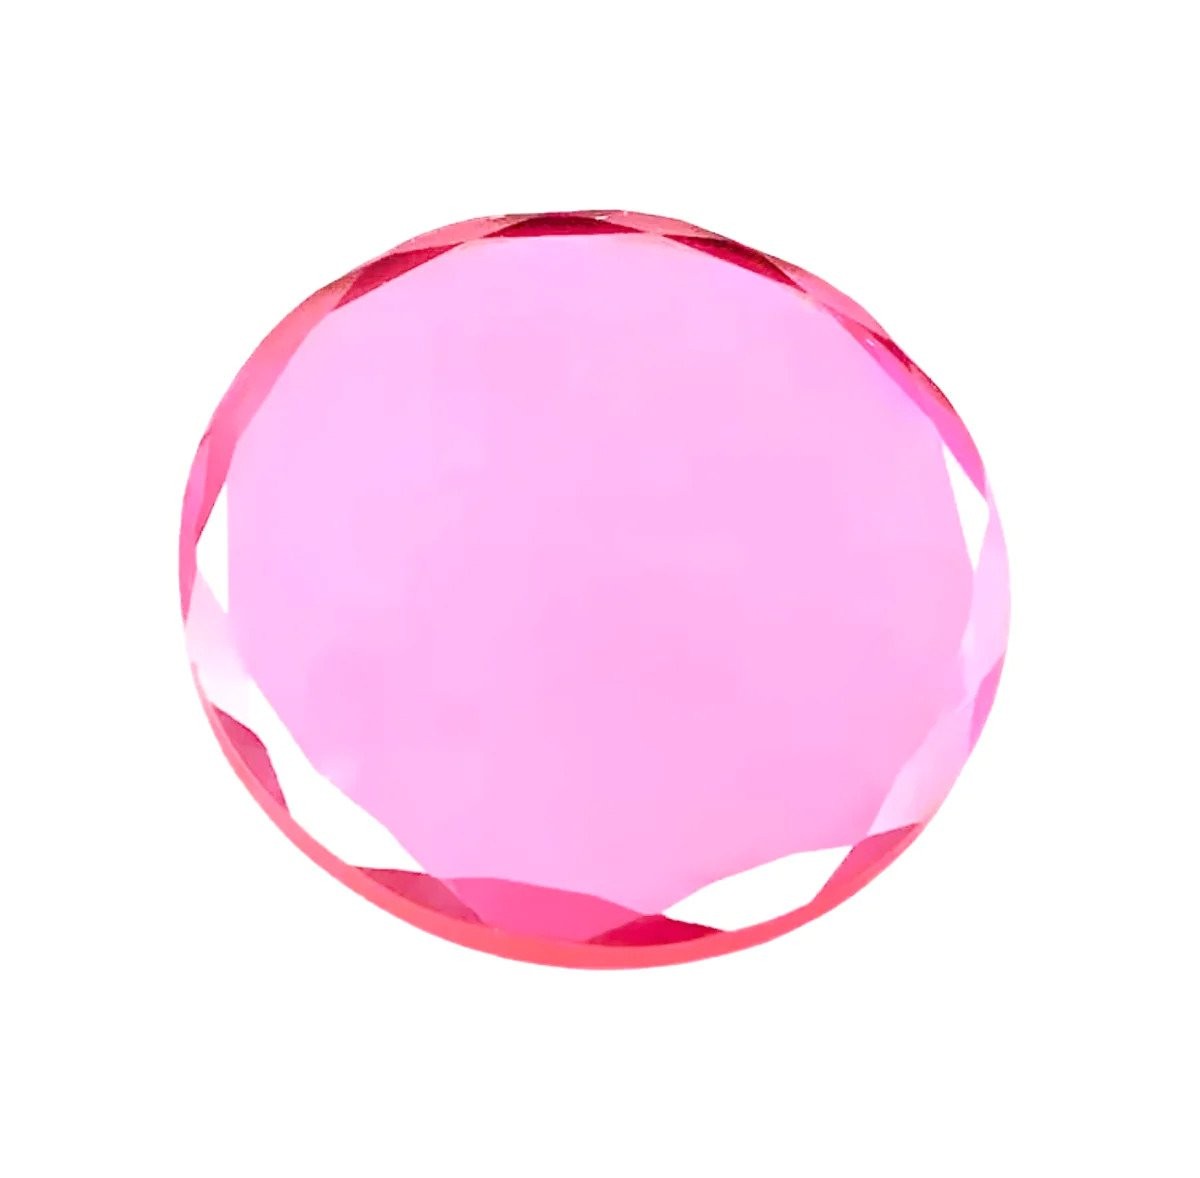 Supporto adesivo per extension ciglia, cristallo rosa